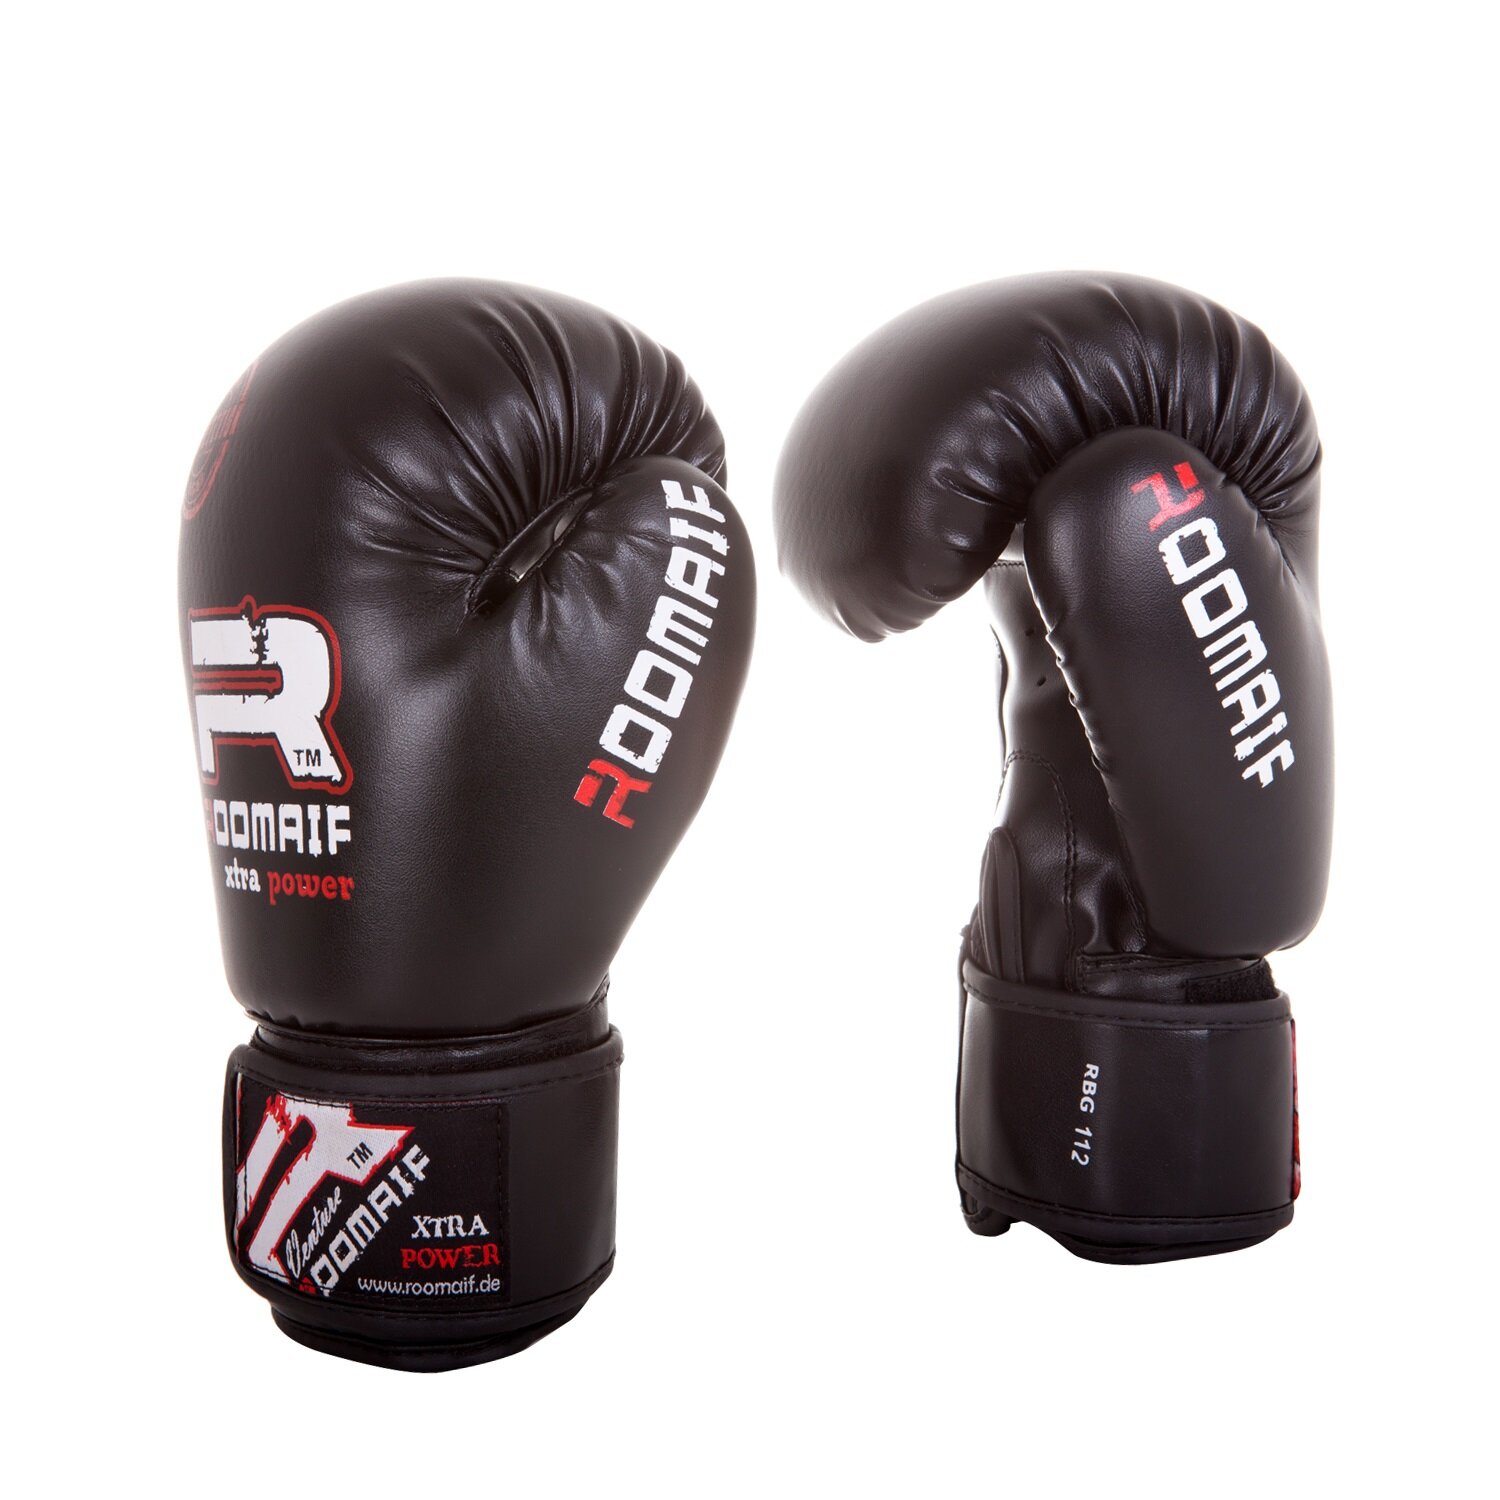 Боксерские перчатки Roomaif Rbg-112 Dx Black размер 10 oz